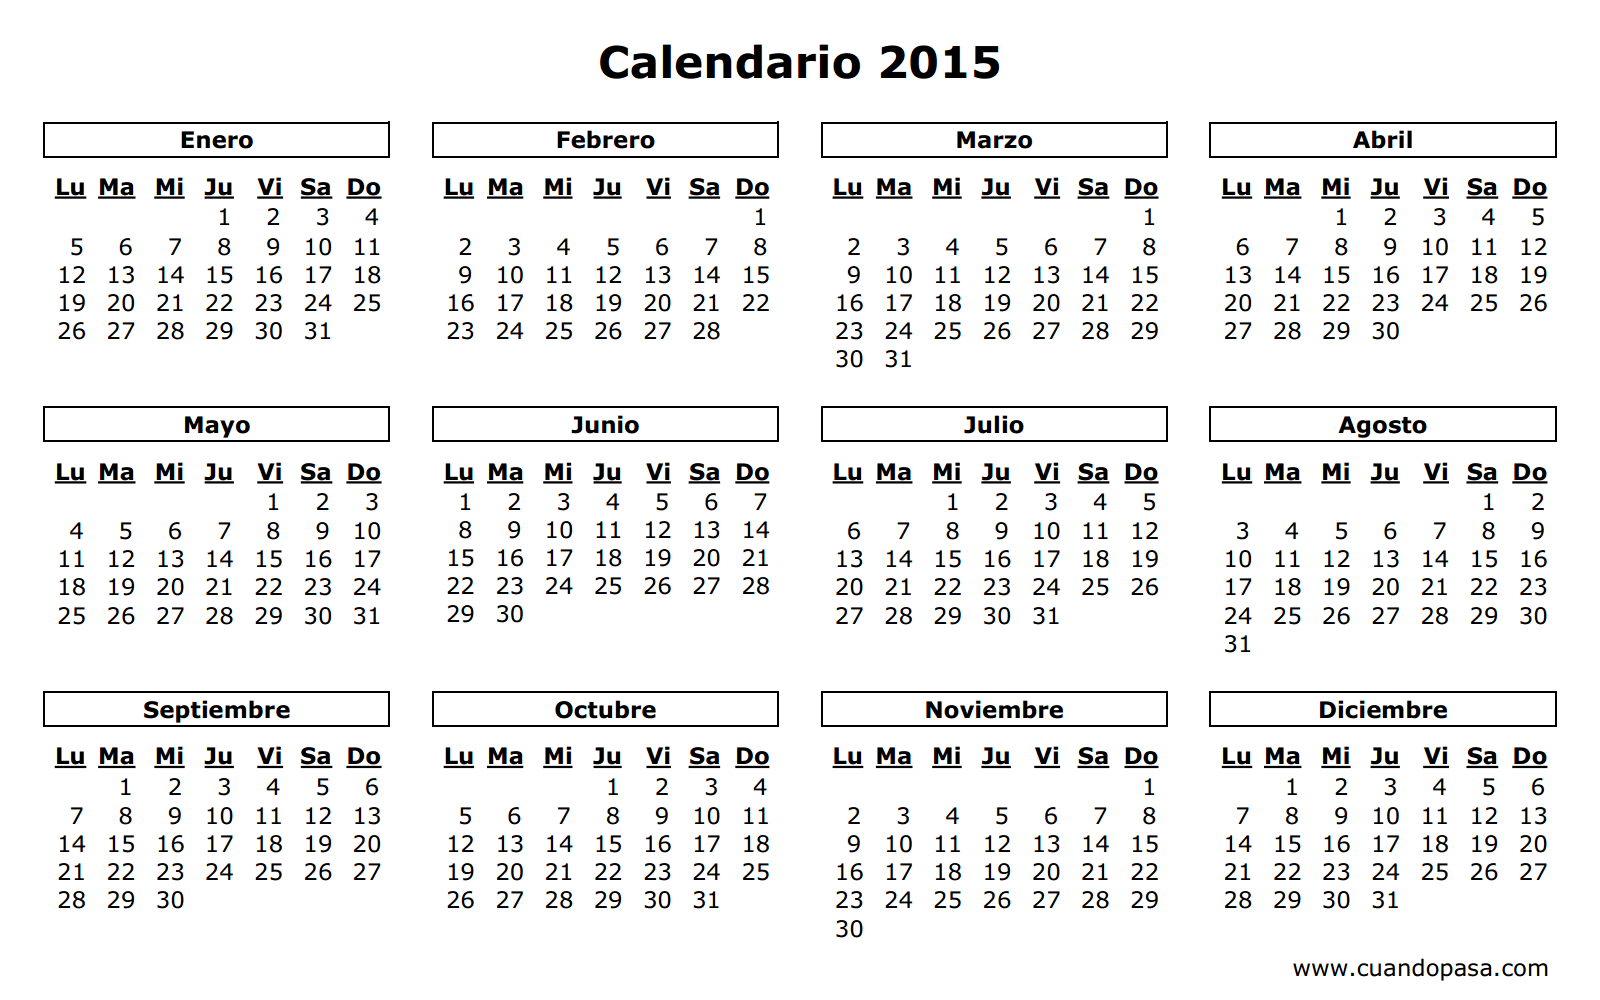 Calendário 2015 preto e branco